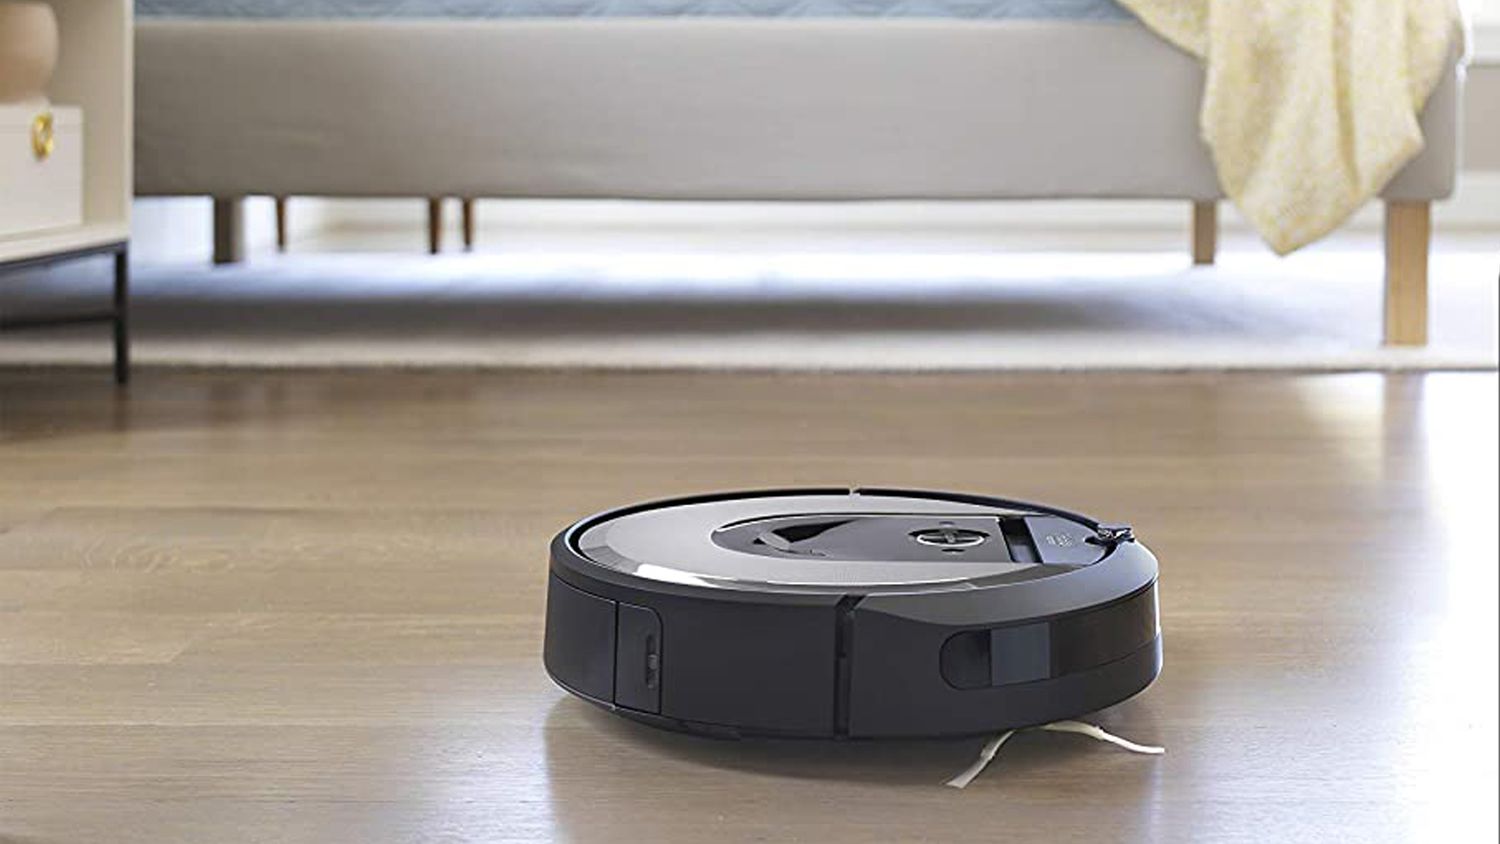 Best Robot Vacuums For Hardwood Floors, Best Vacuum For Pet Hair On Carpet And Hardwood Floors